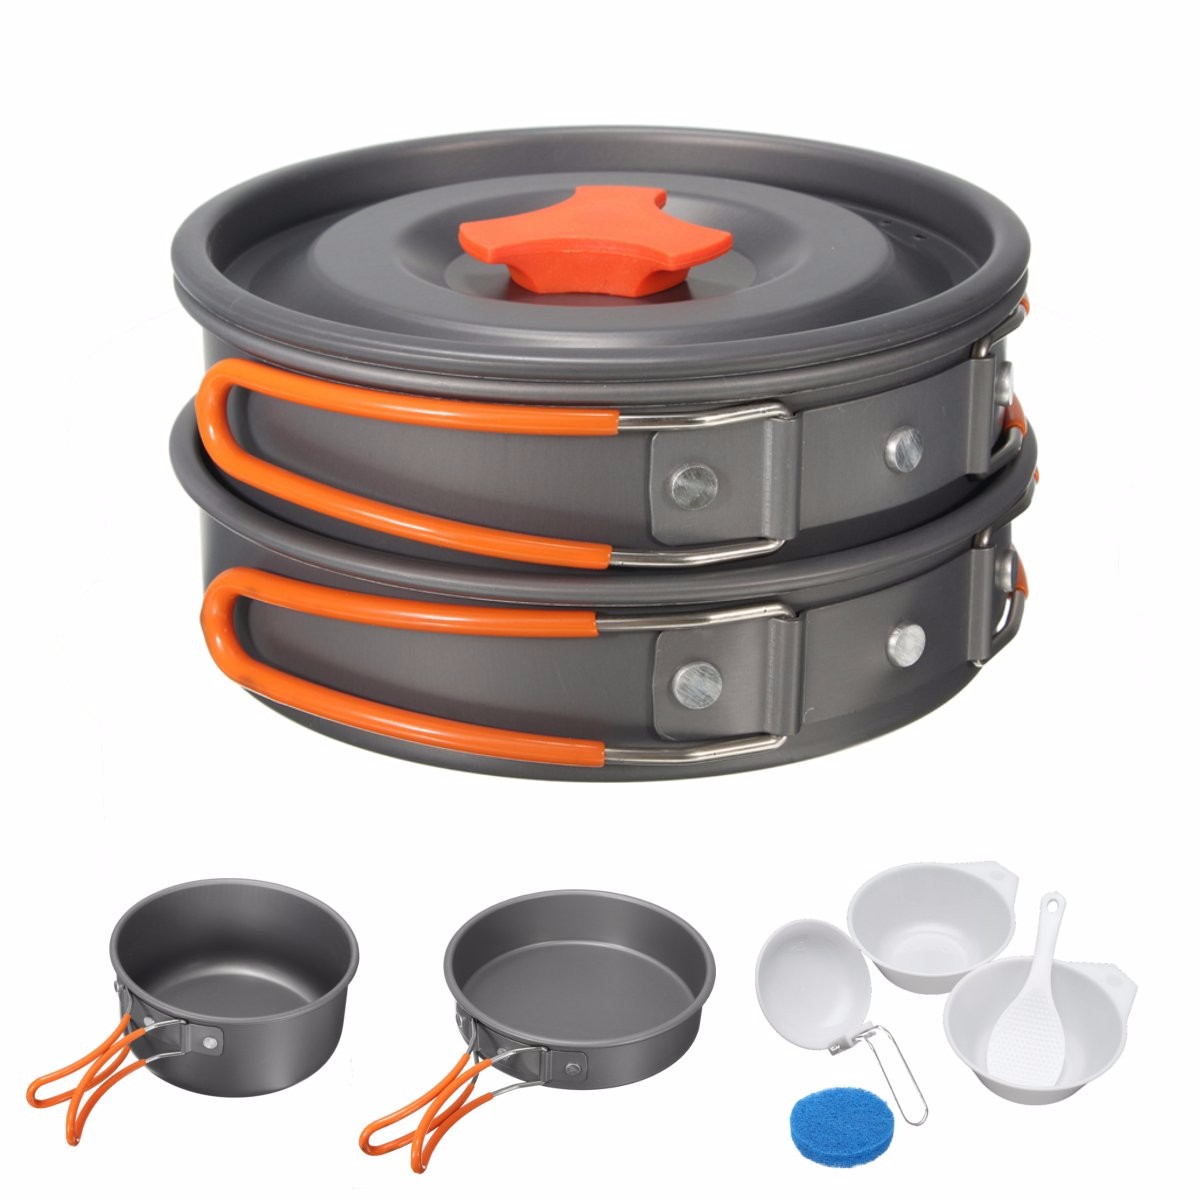 8Pcs-Camping-Aluminum-Pot-Bowl-Portable-Outdoor-Picnic-Cooking-Pan-Set-Cookware-1116210-2